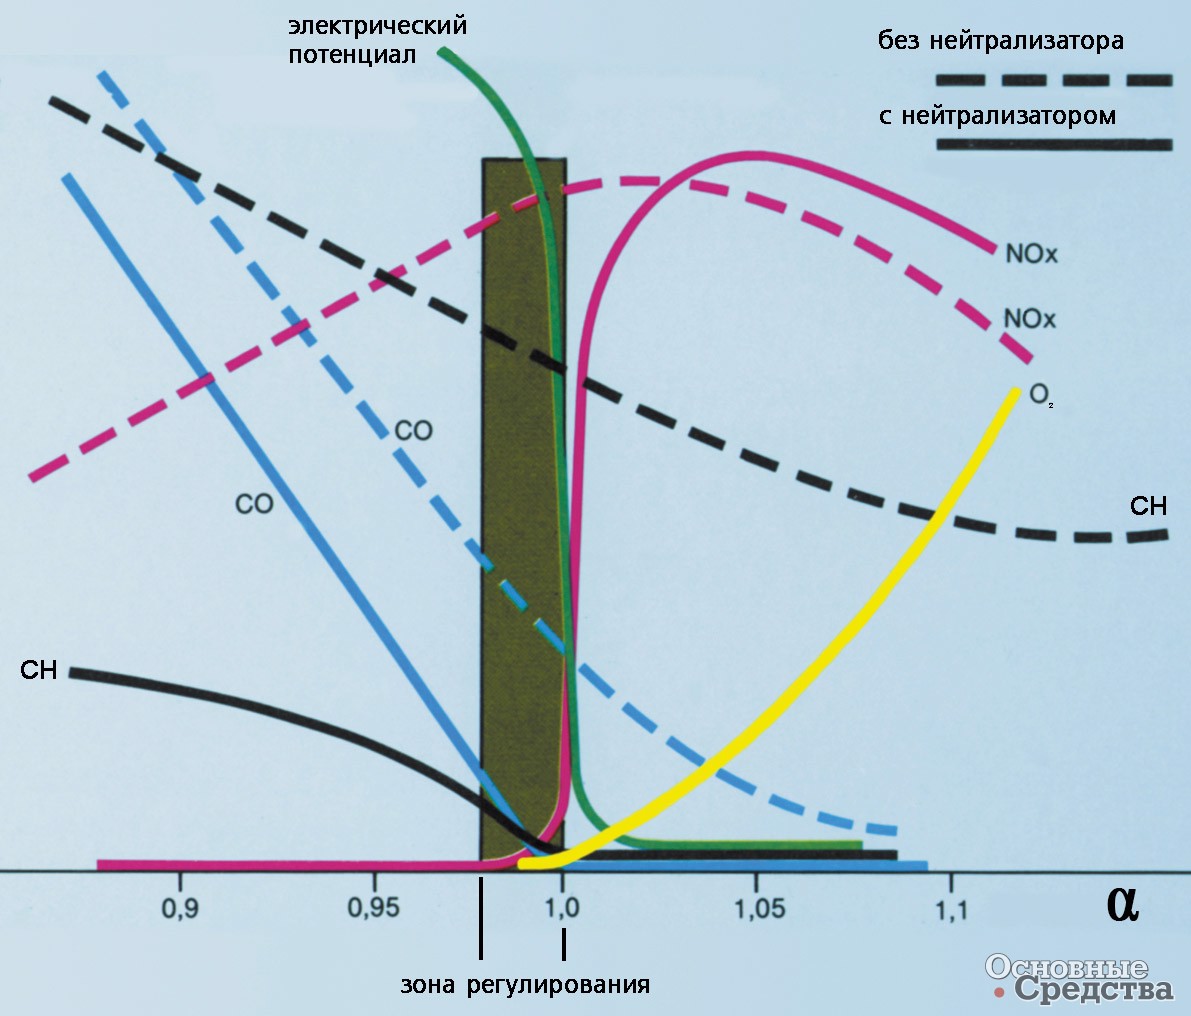 Состав отработавших газов и потенциал кислородного датчика в зависимости от коэффициента избытка воздуха α(λ)